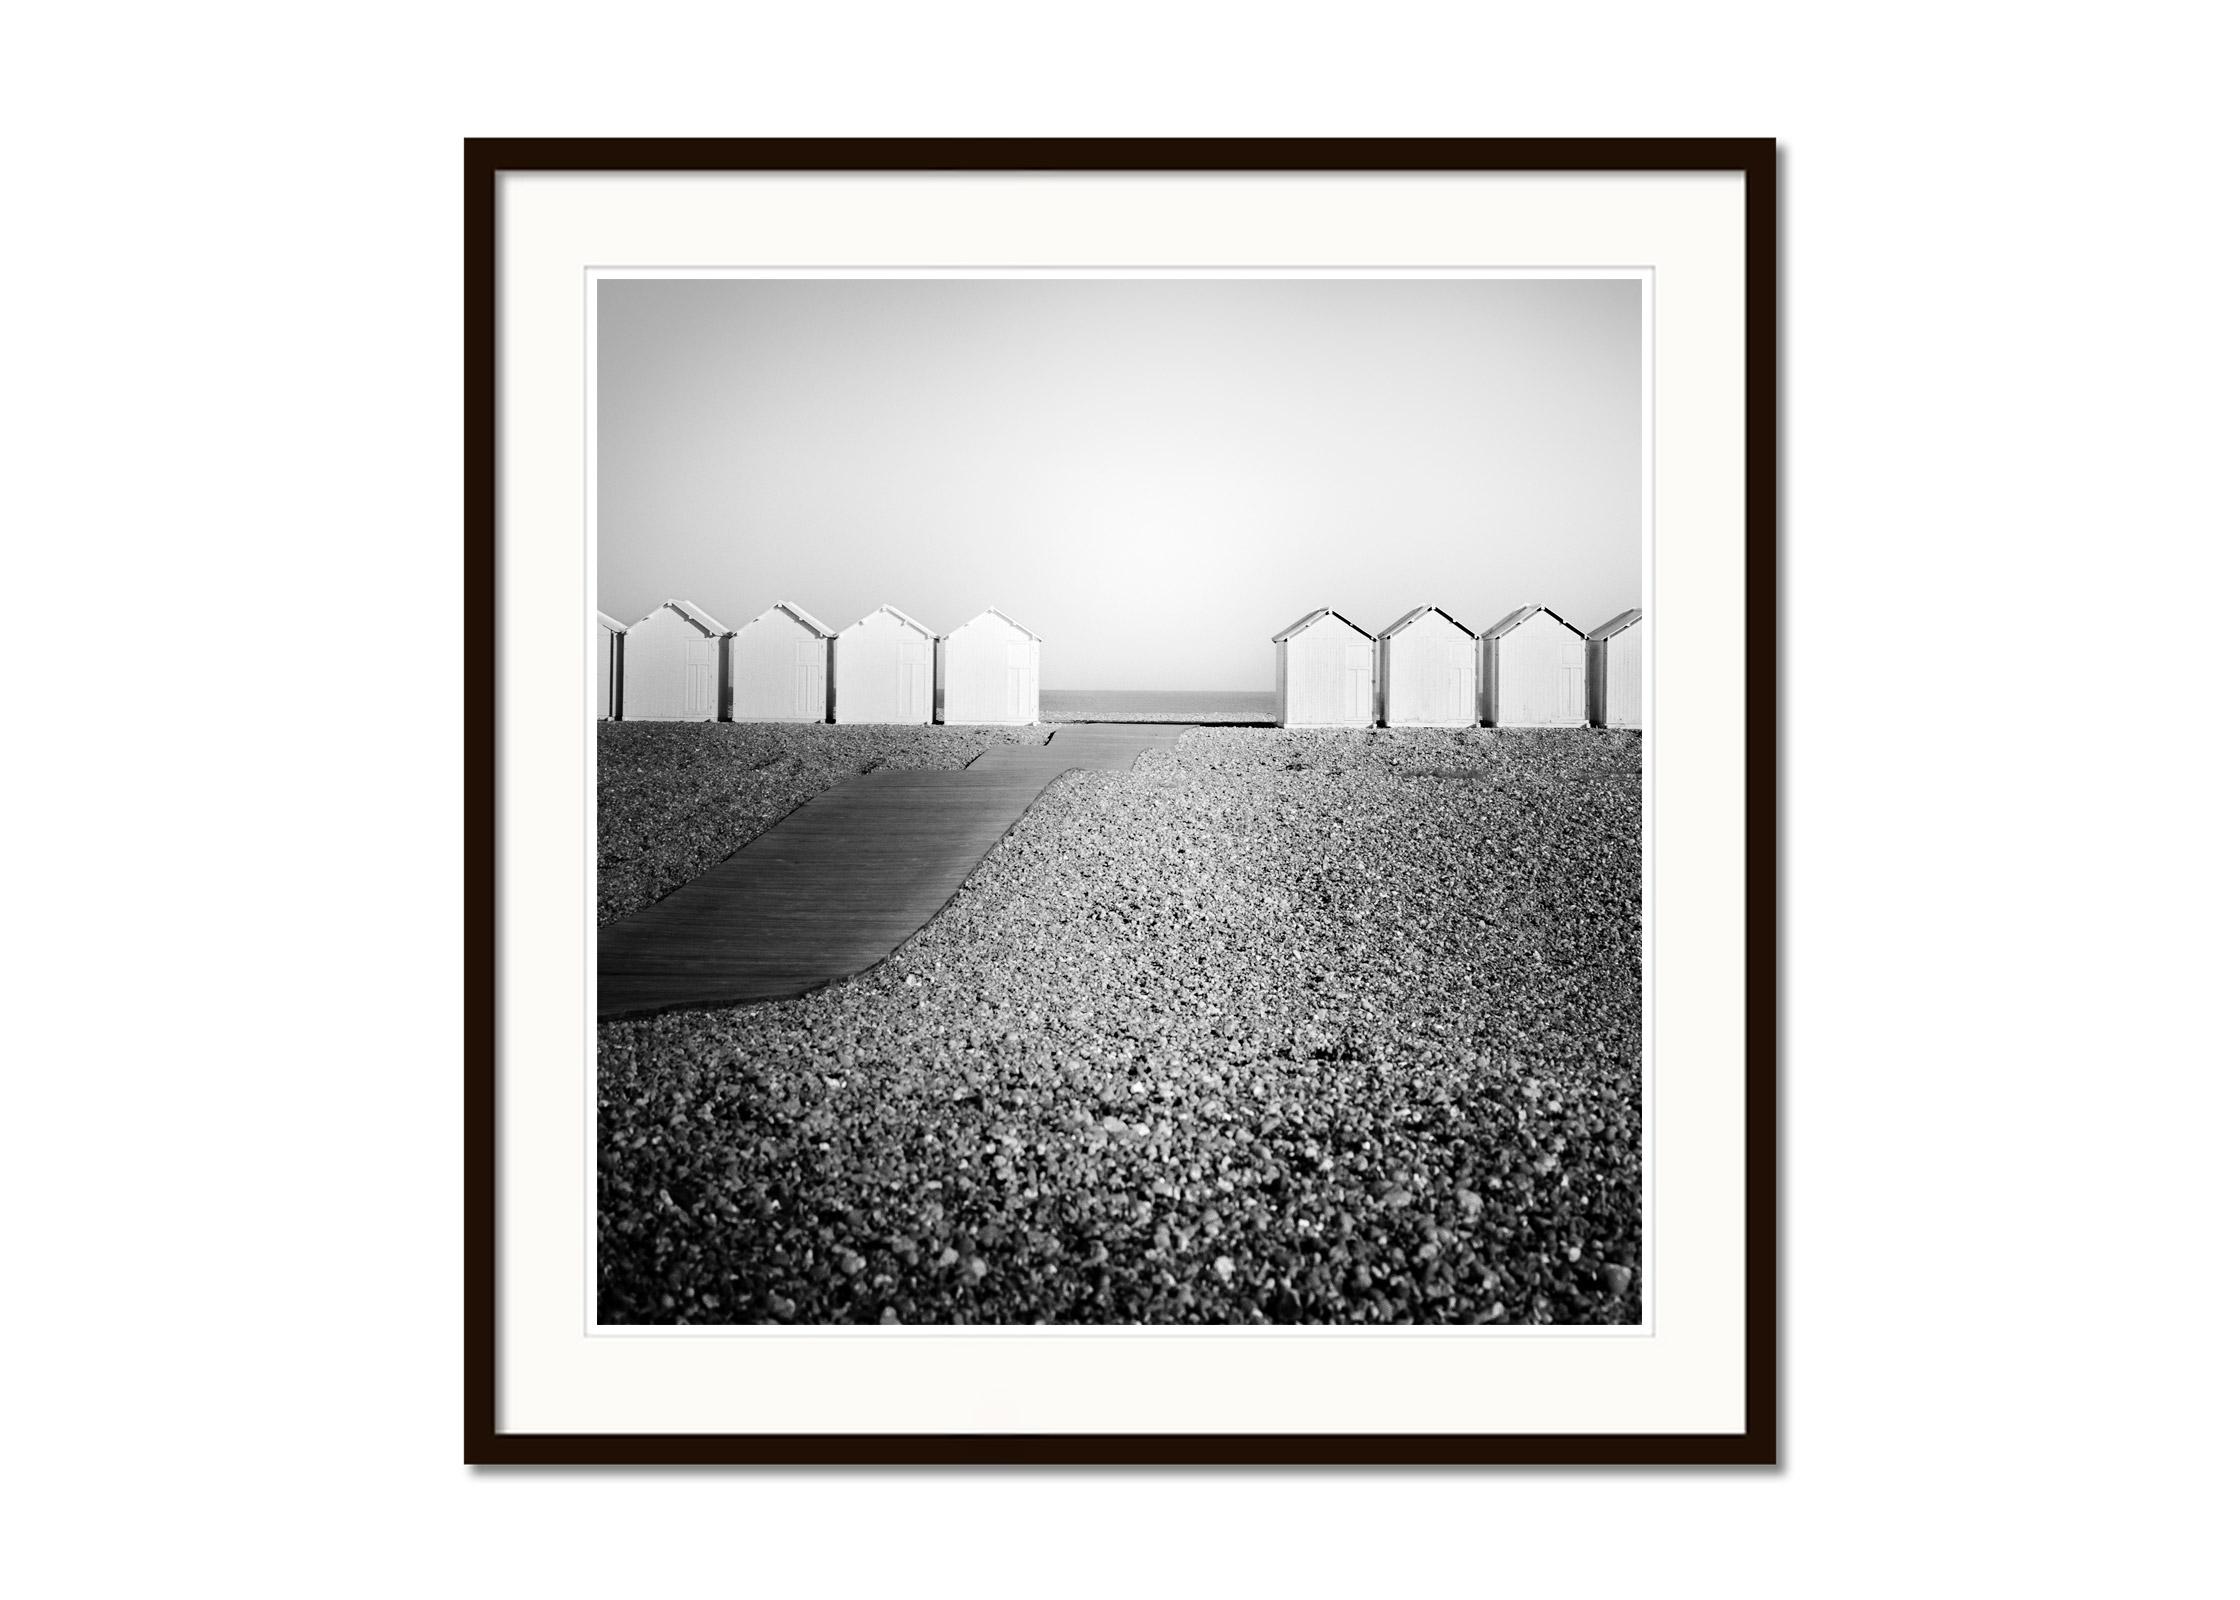 Holzhütten, Promenade, Rocky Beach, Frankreich, Schwarz-Weiß-Landschaftsfotografie (Grau), Black and White Photograph, von Gerald Berghammer